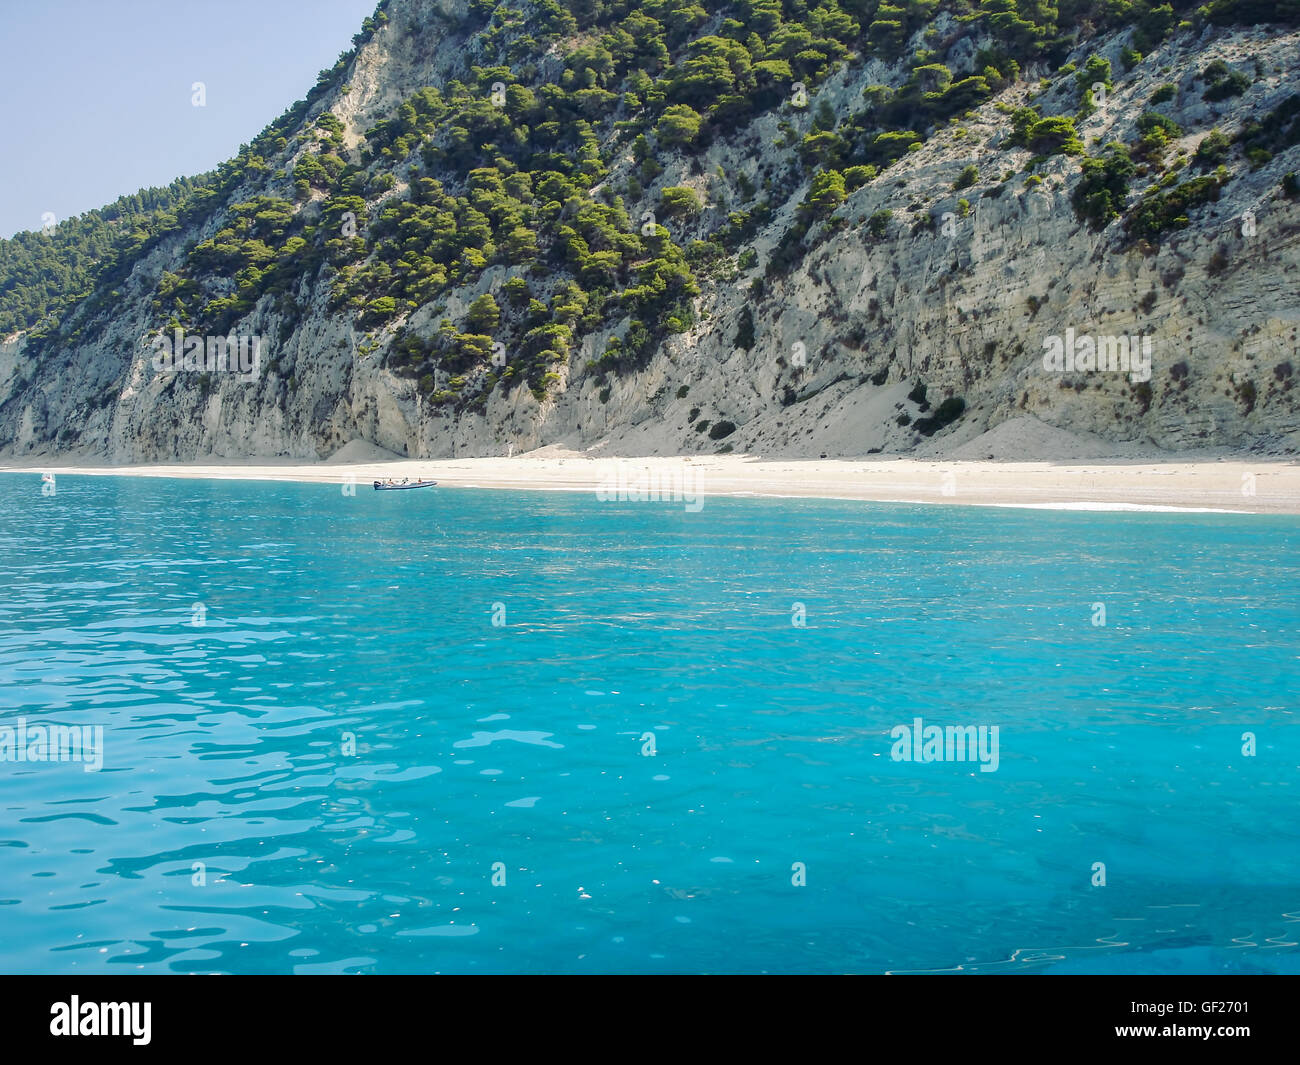 Plage sur la mer Ionienne île de Lefkada, Grèce Banque D'Images